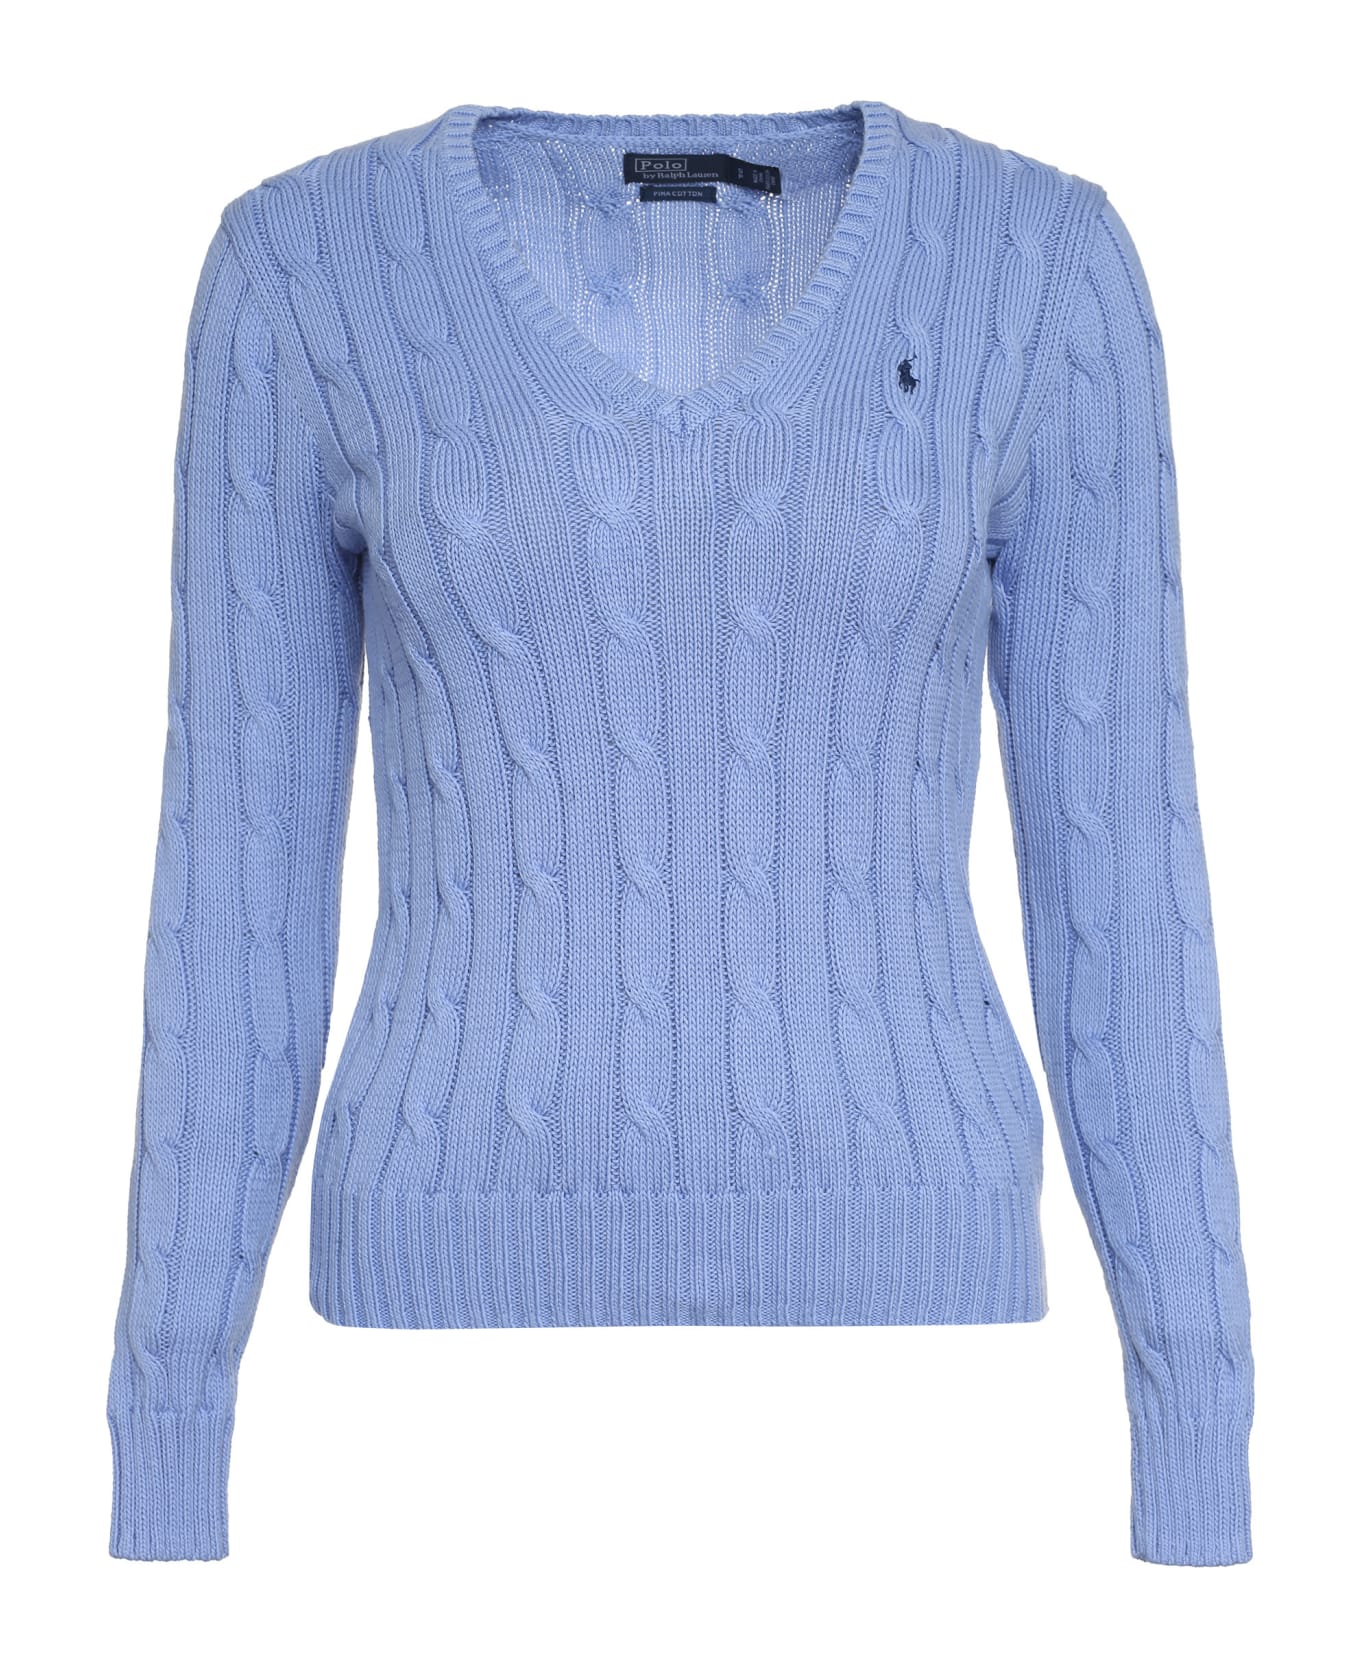 Ralph Lauren Pony Sweater - Blue